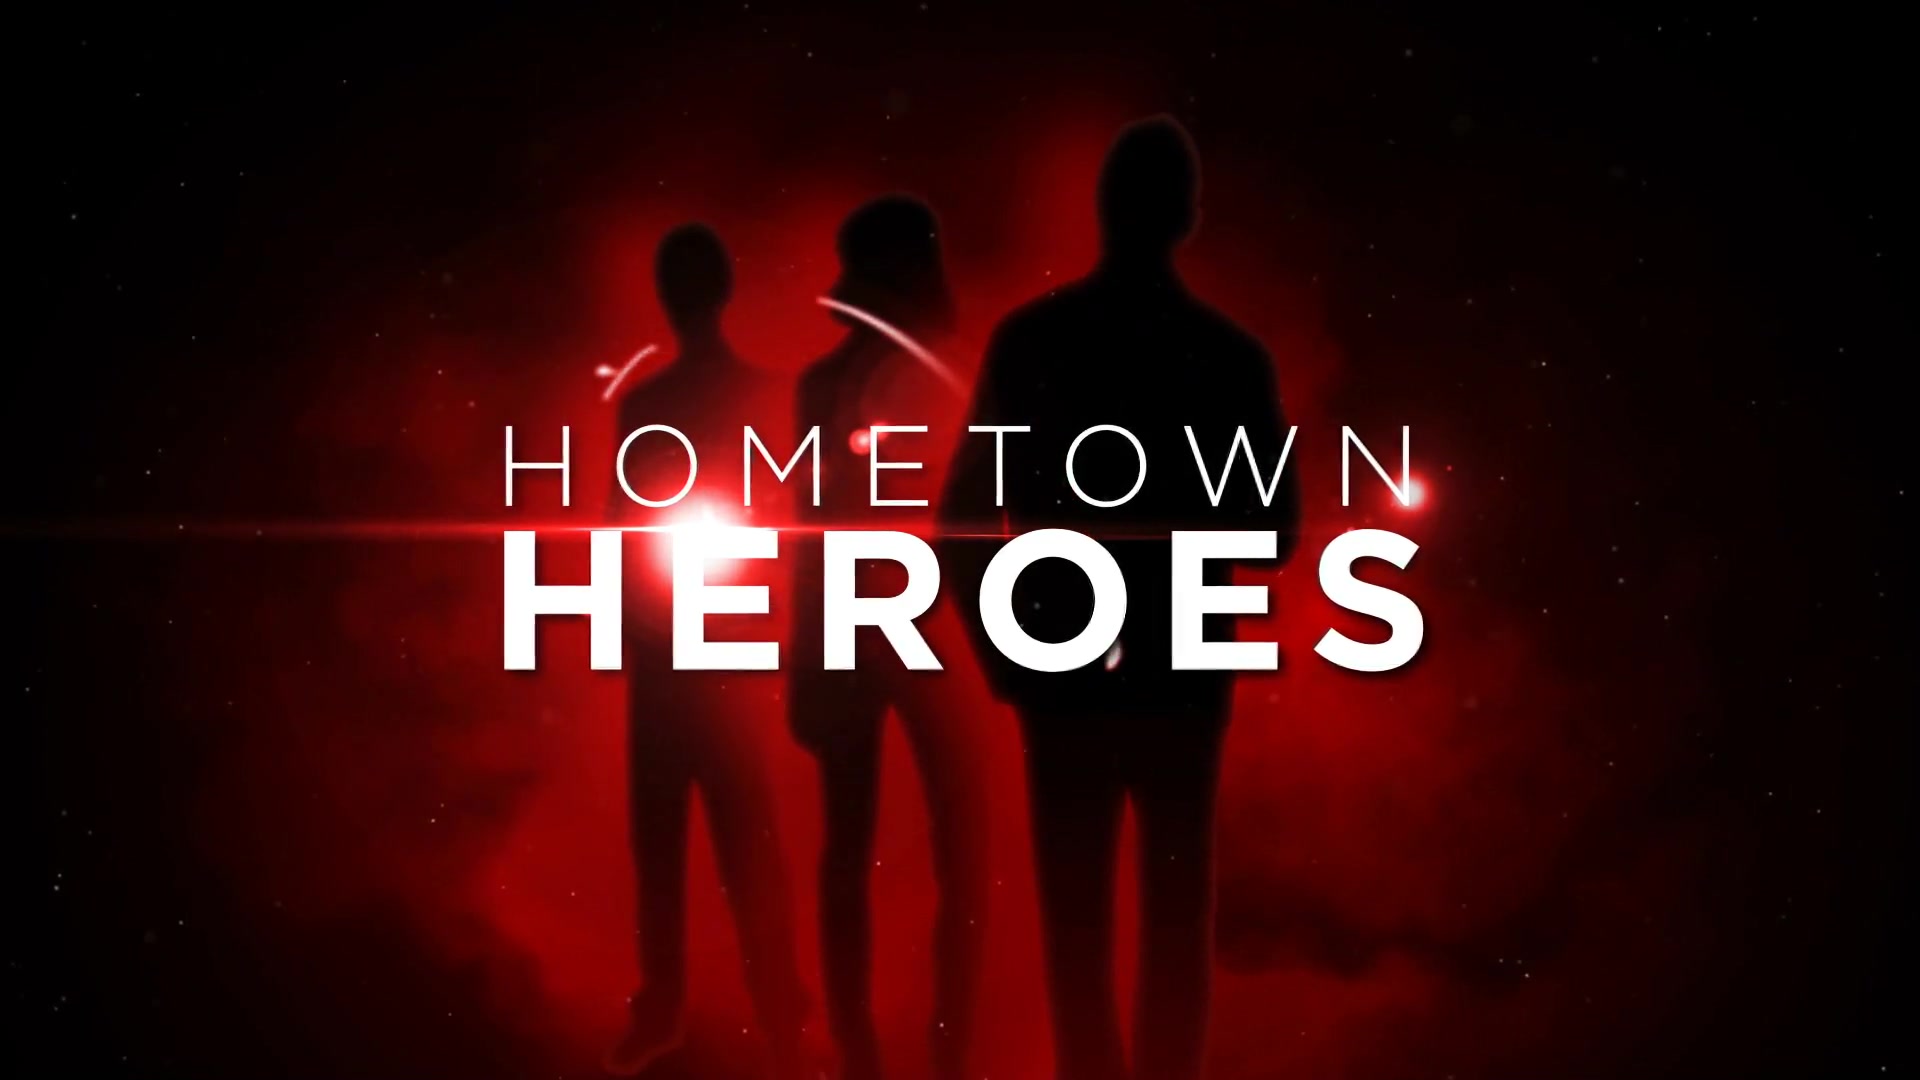 Hometown Heroes - Download Videohive 5522729